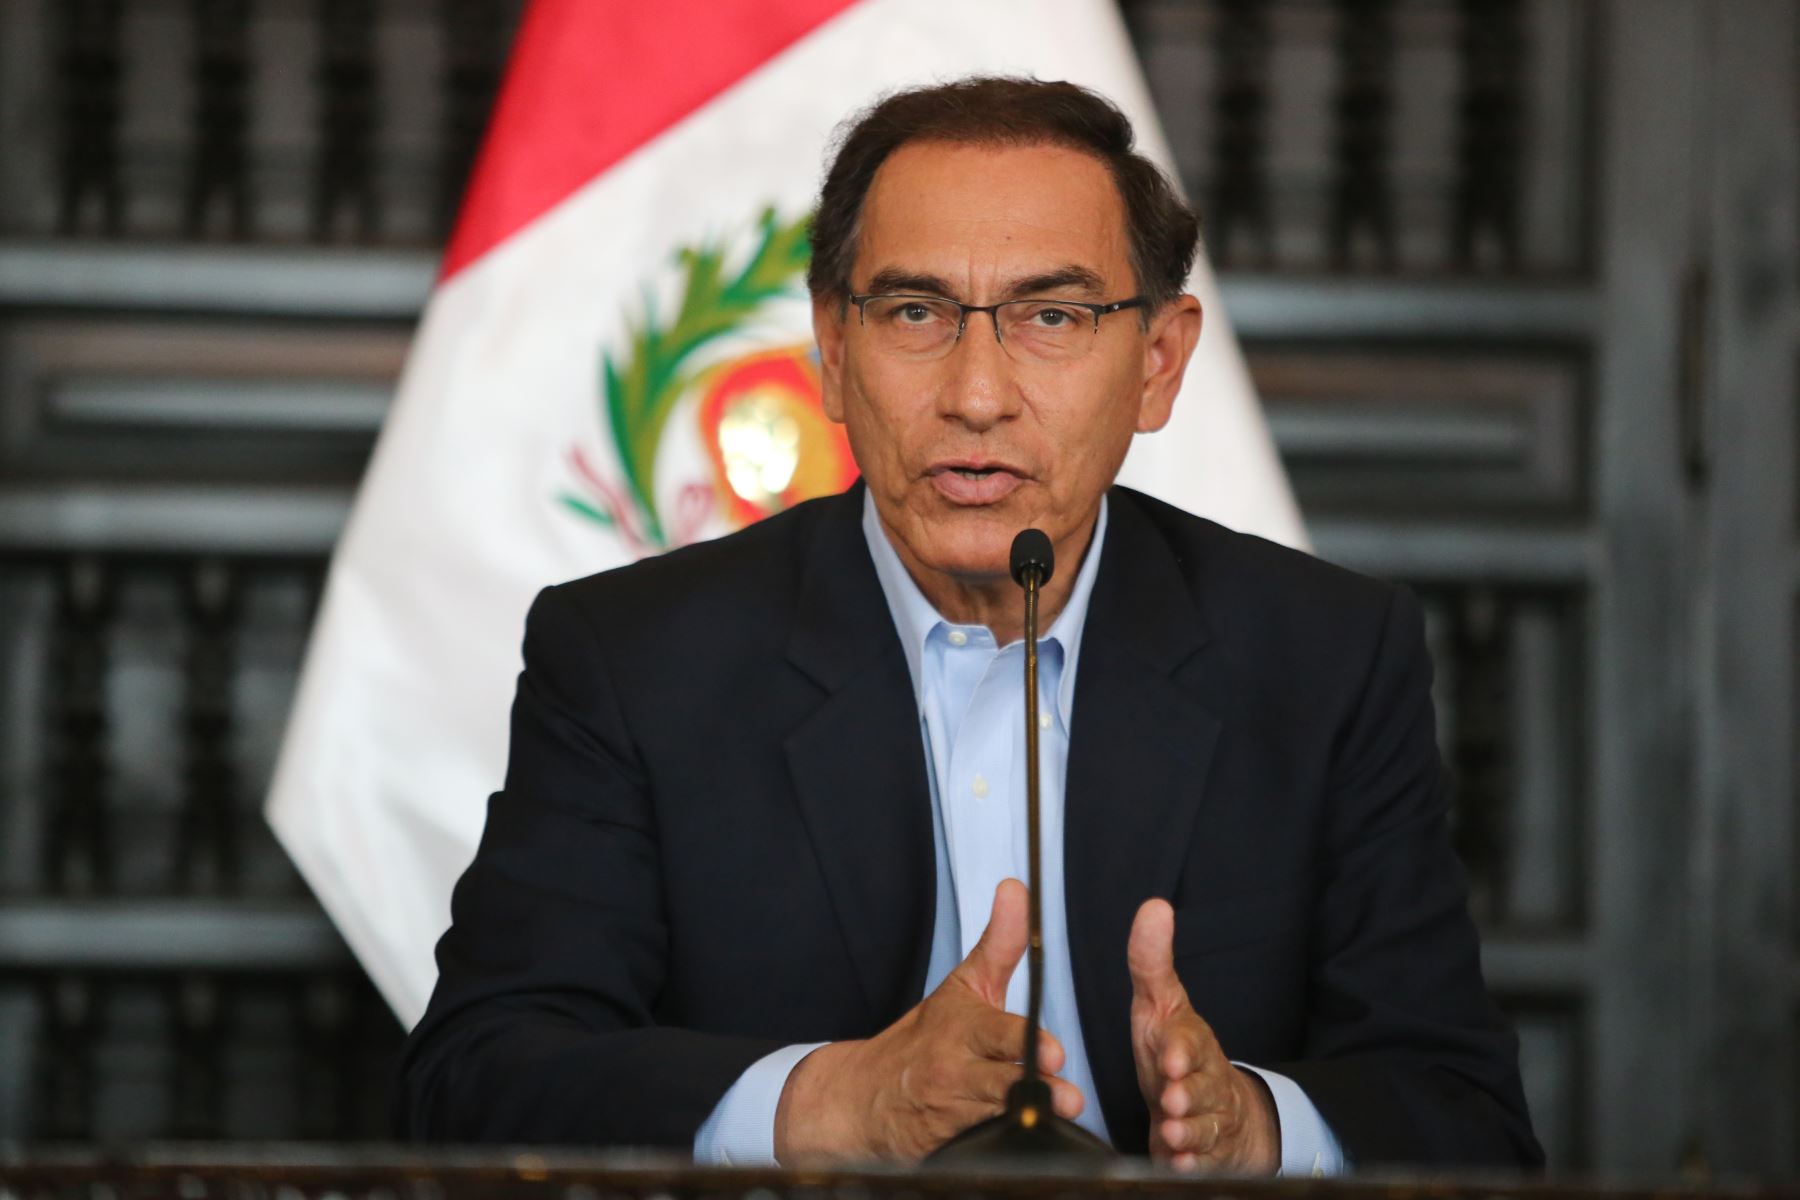 Martín Vizcarra anuncia creación de su nuevo partido político “Perú primero”